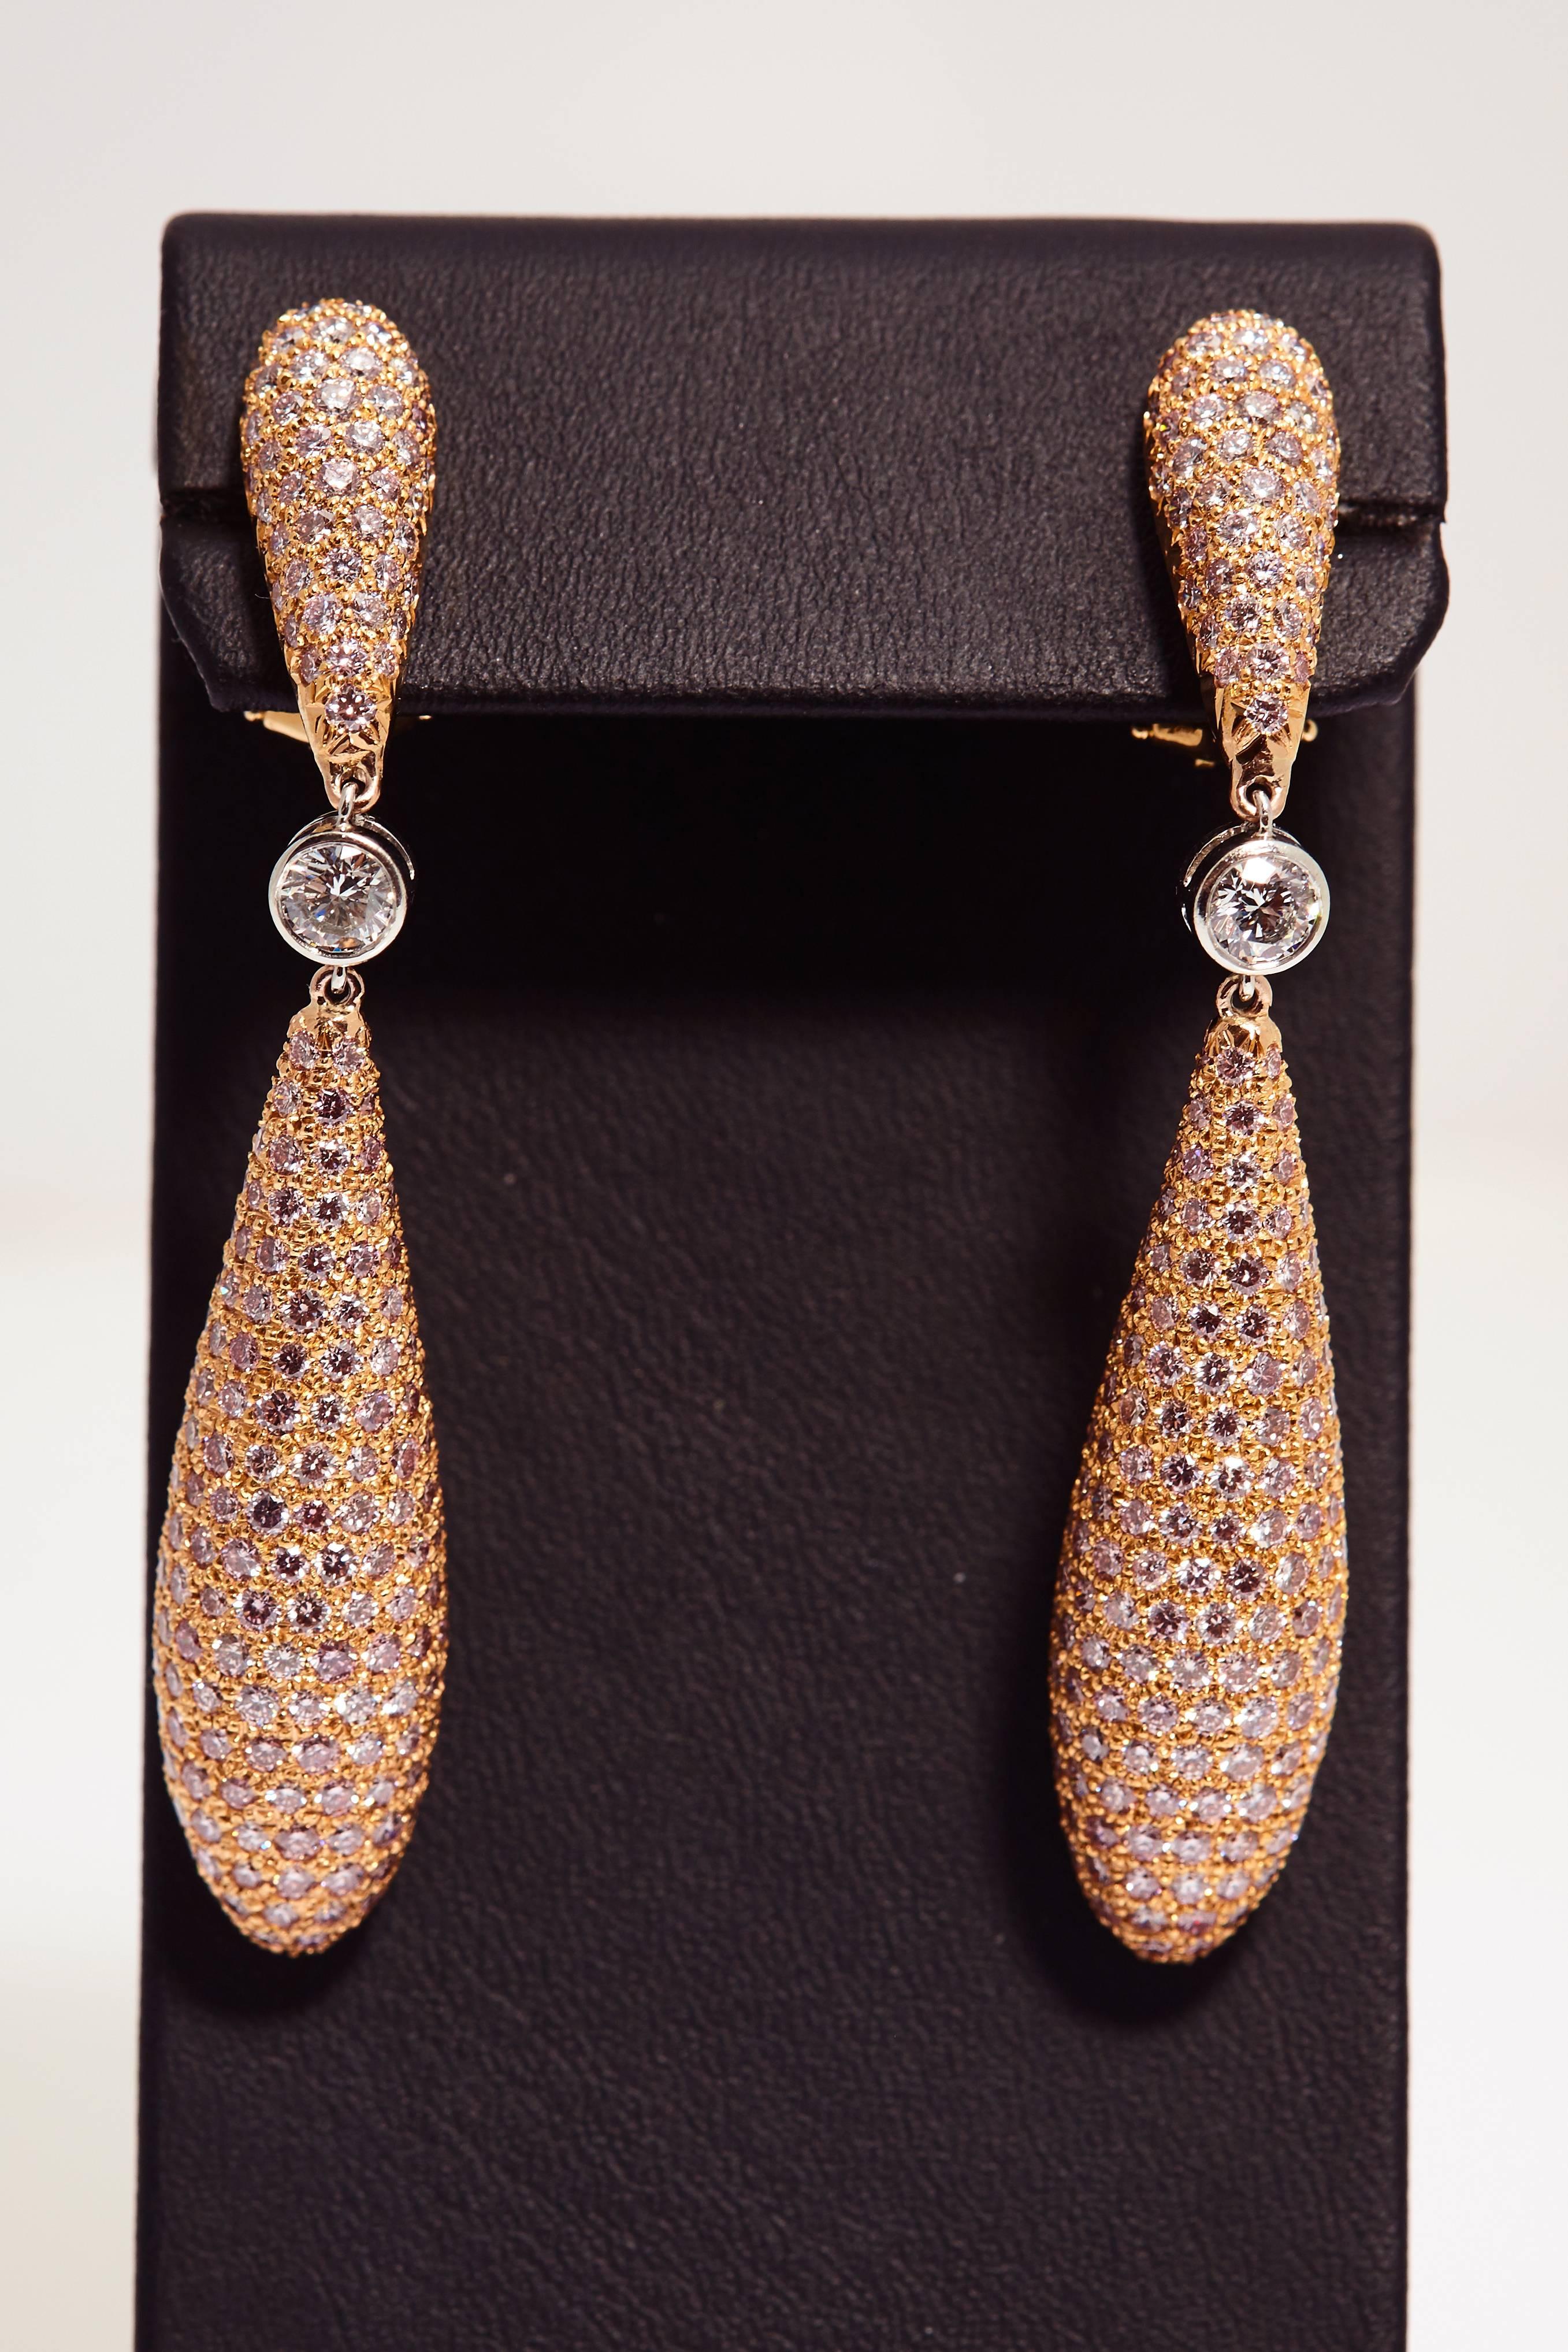 Modern Pink Diamonds in Elongated Rose Gold Teardrop Earrings 11.67 Carat Total For Sale